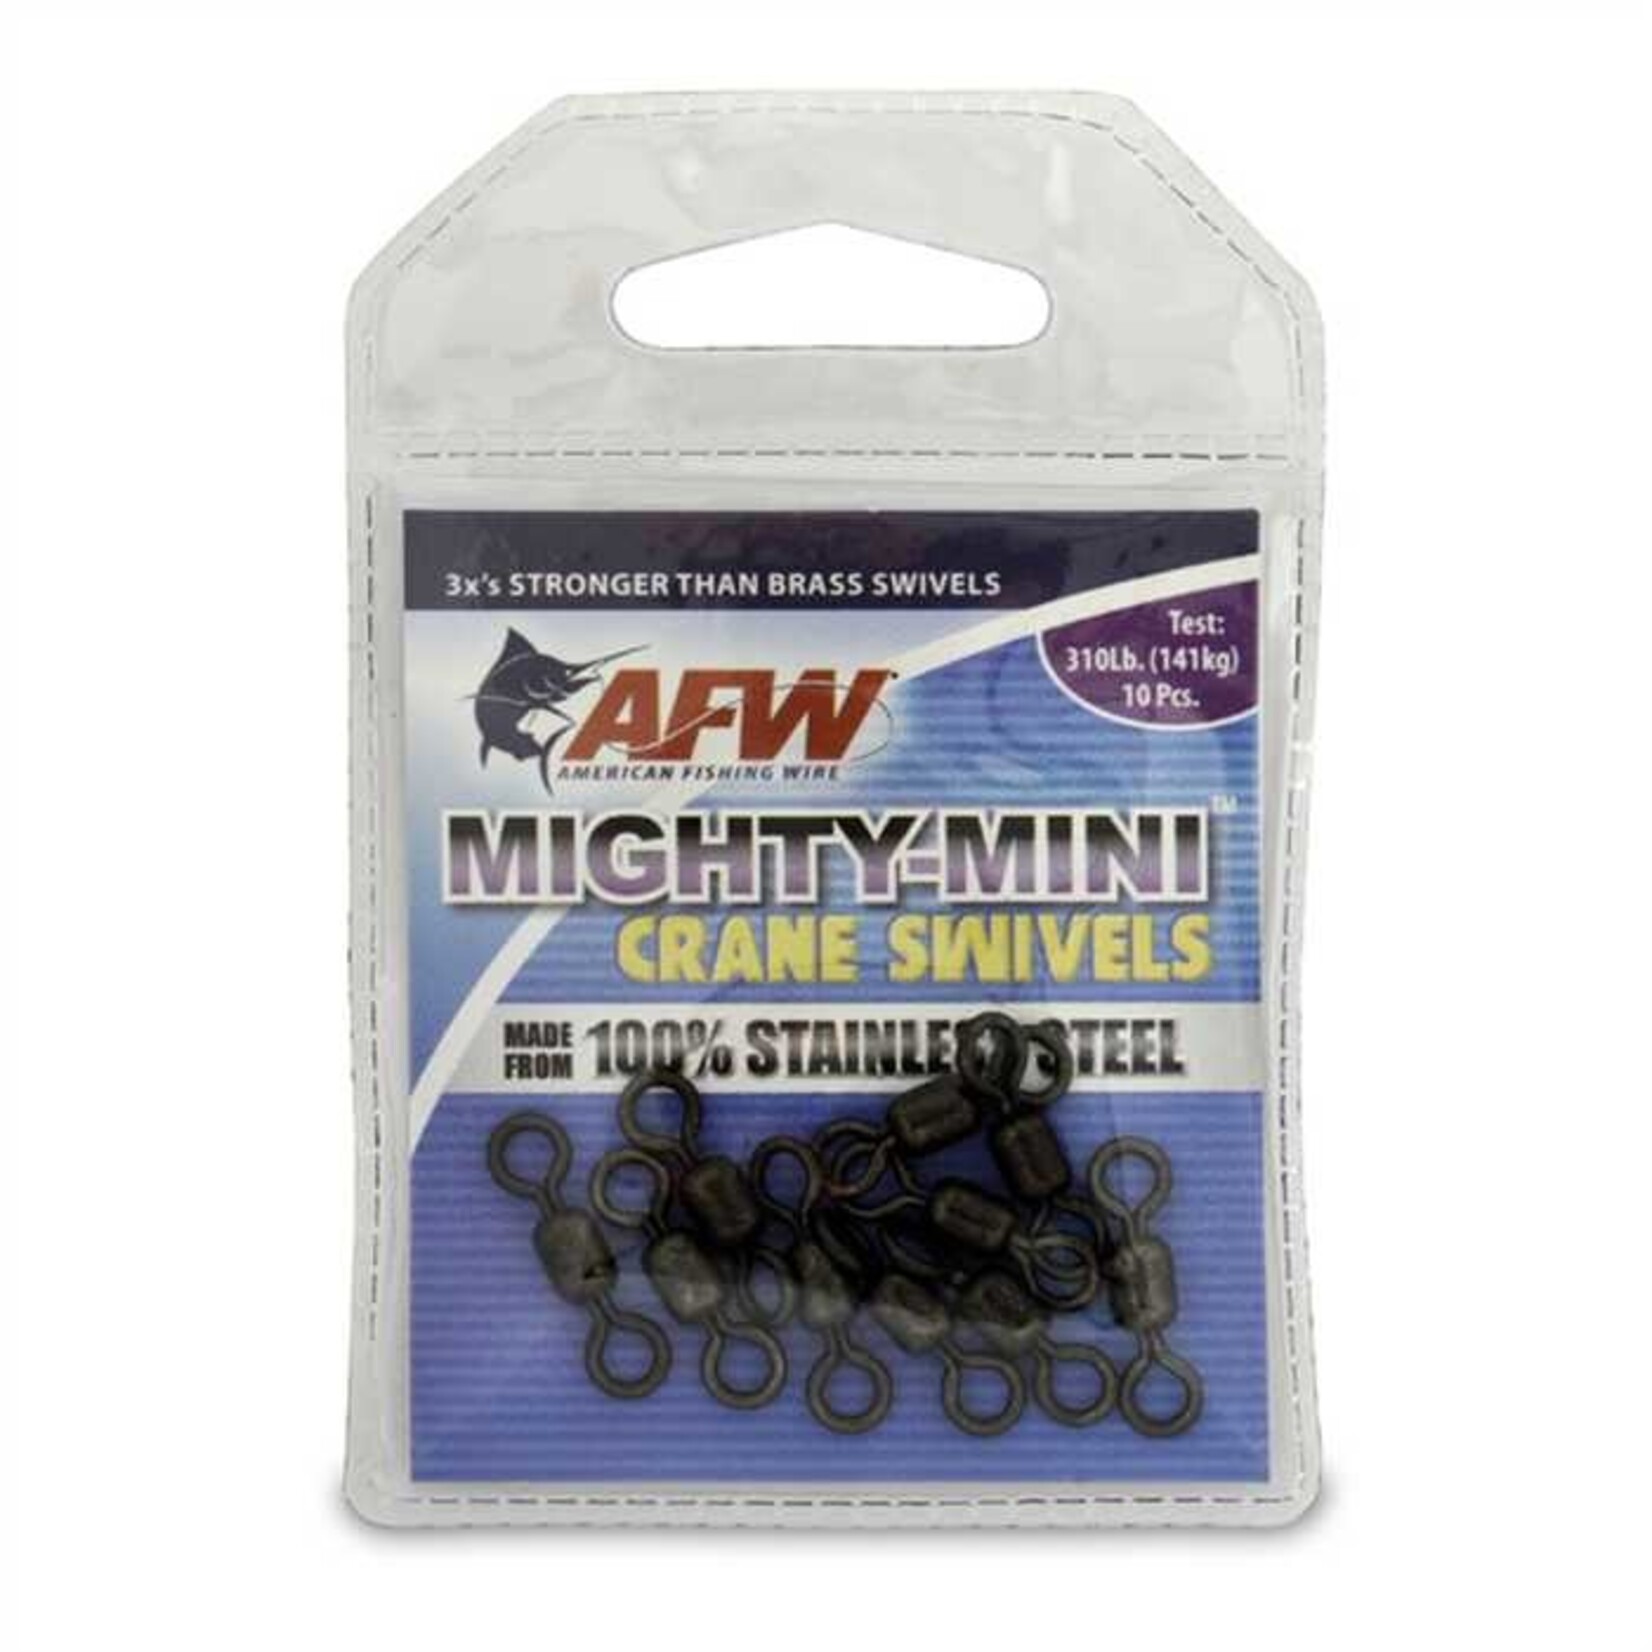 AFW Émérillon Afw Swivel Mighty-Mini 310Lbs Black 10/Pqt